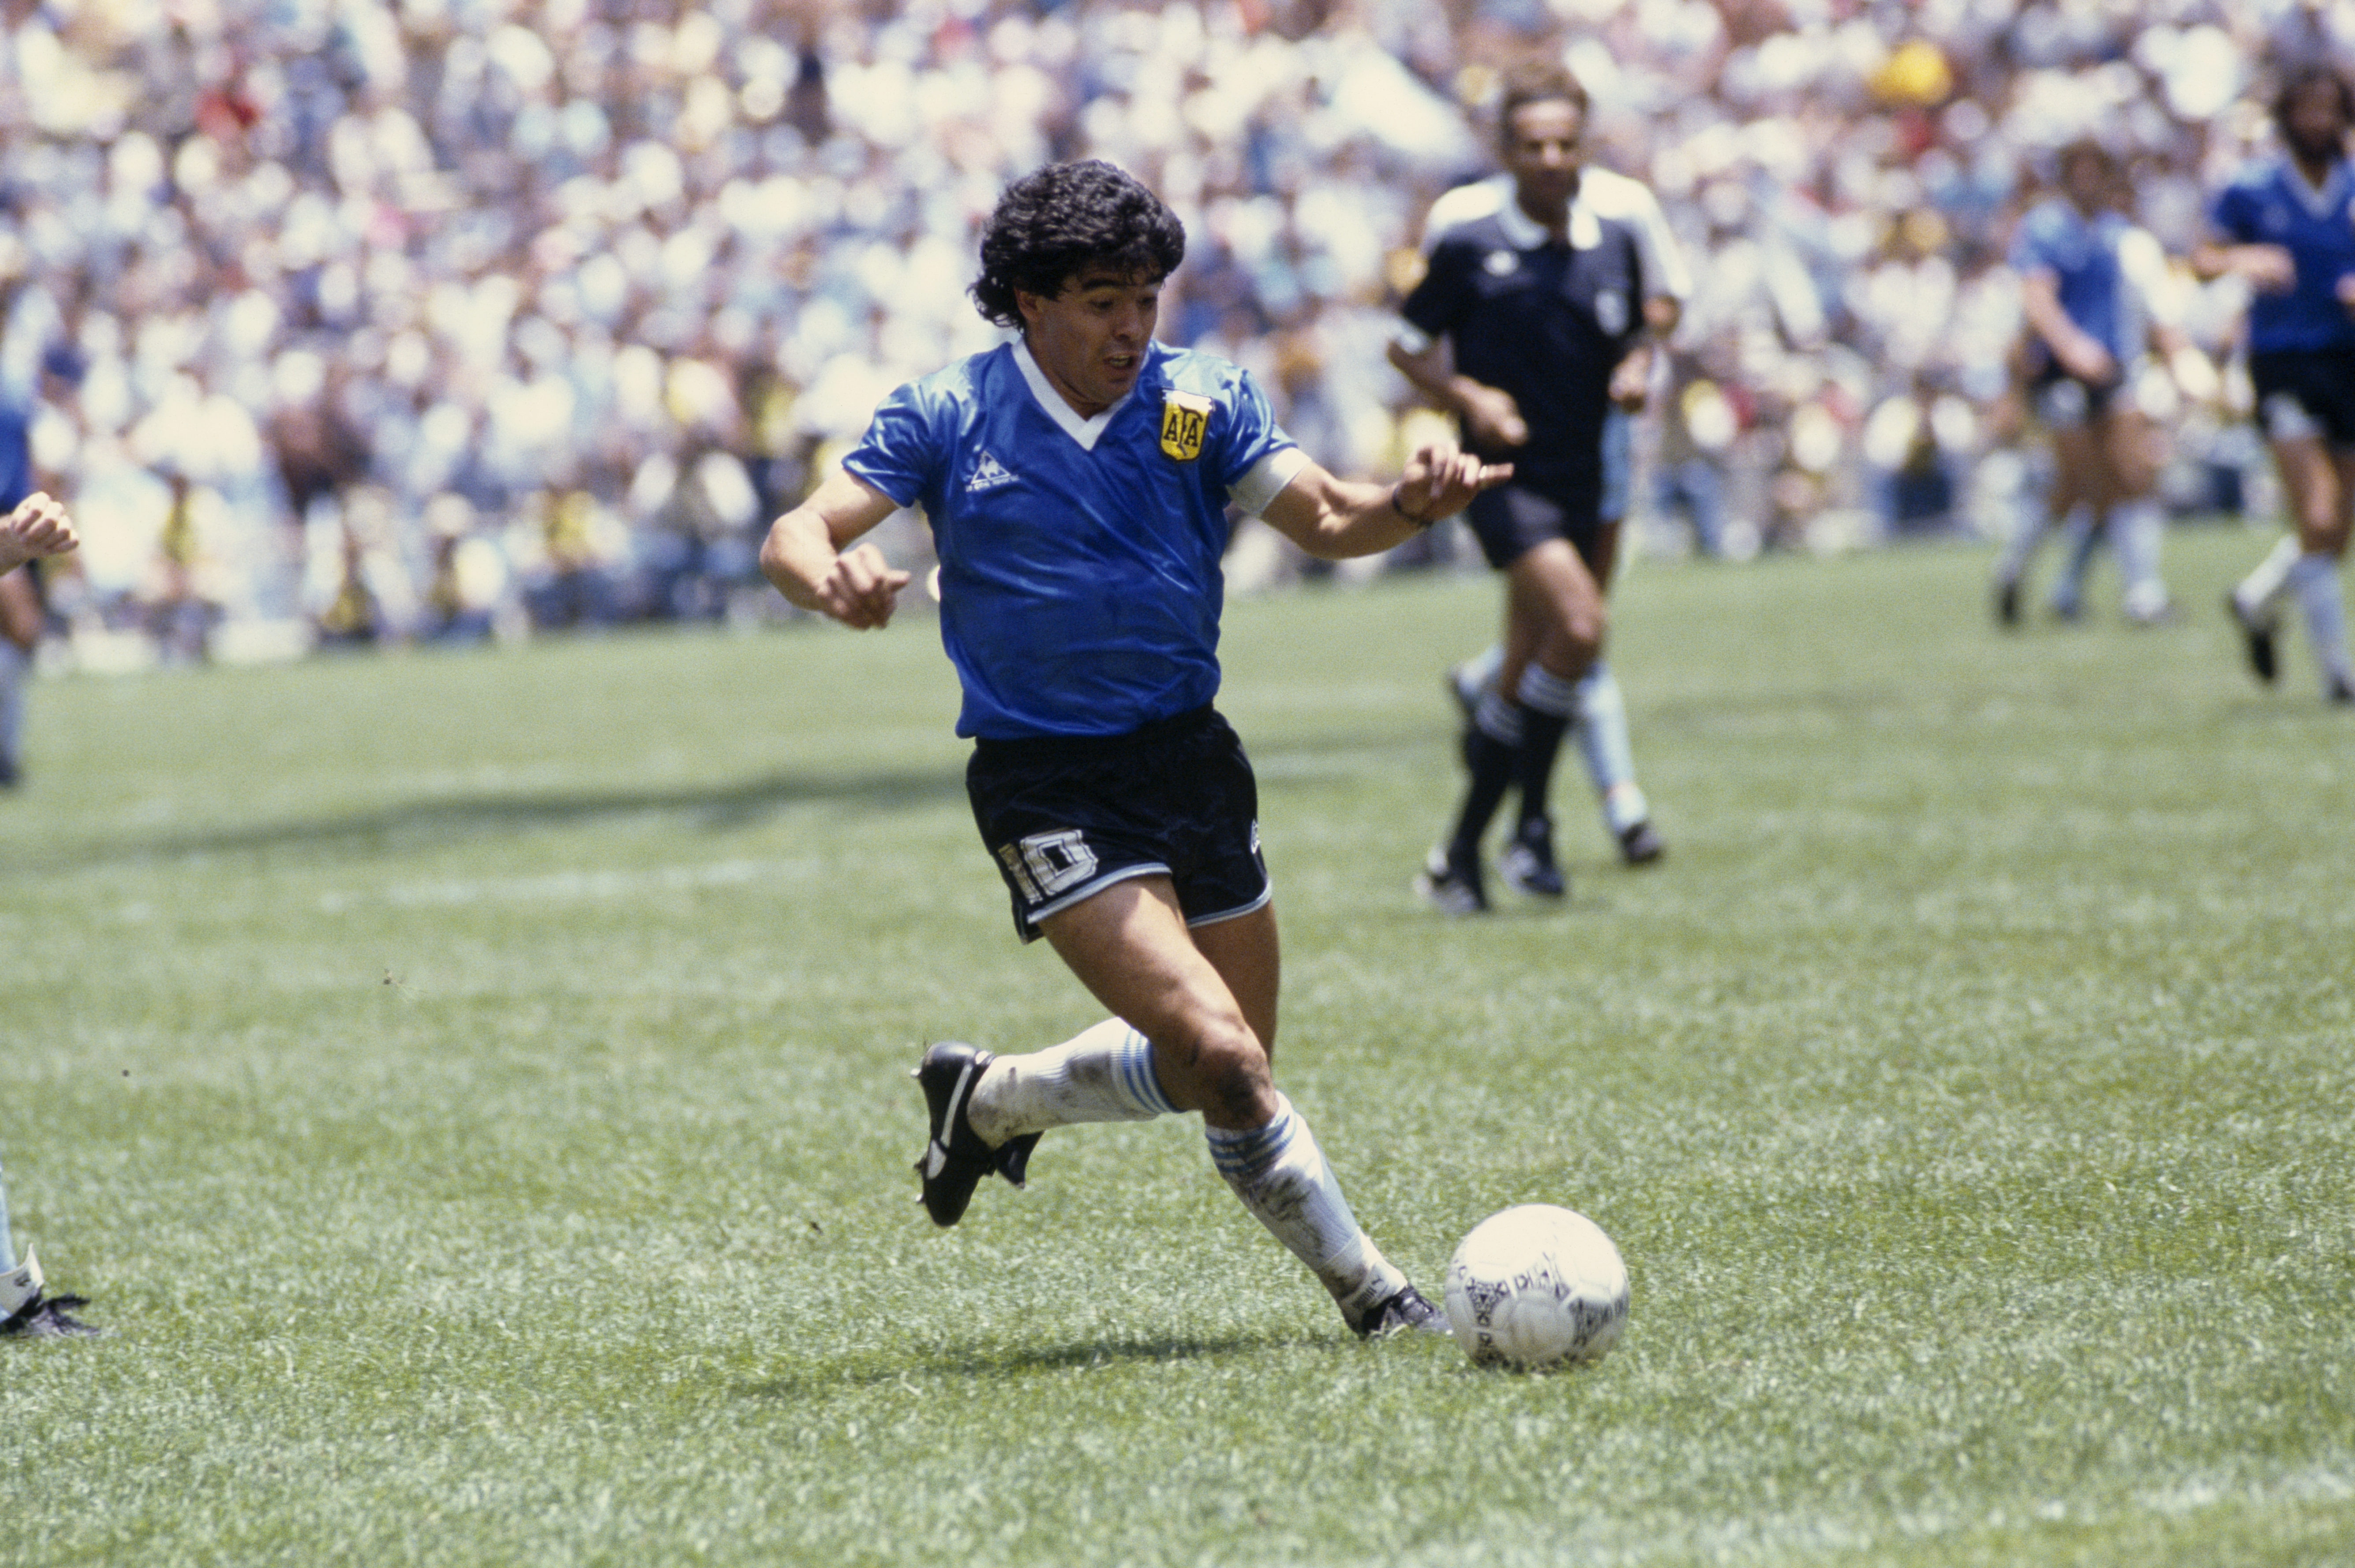 Diego Maradona: The Brand of God